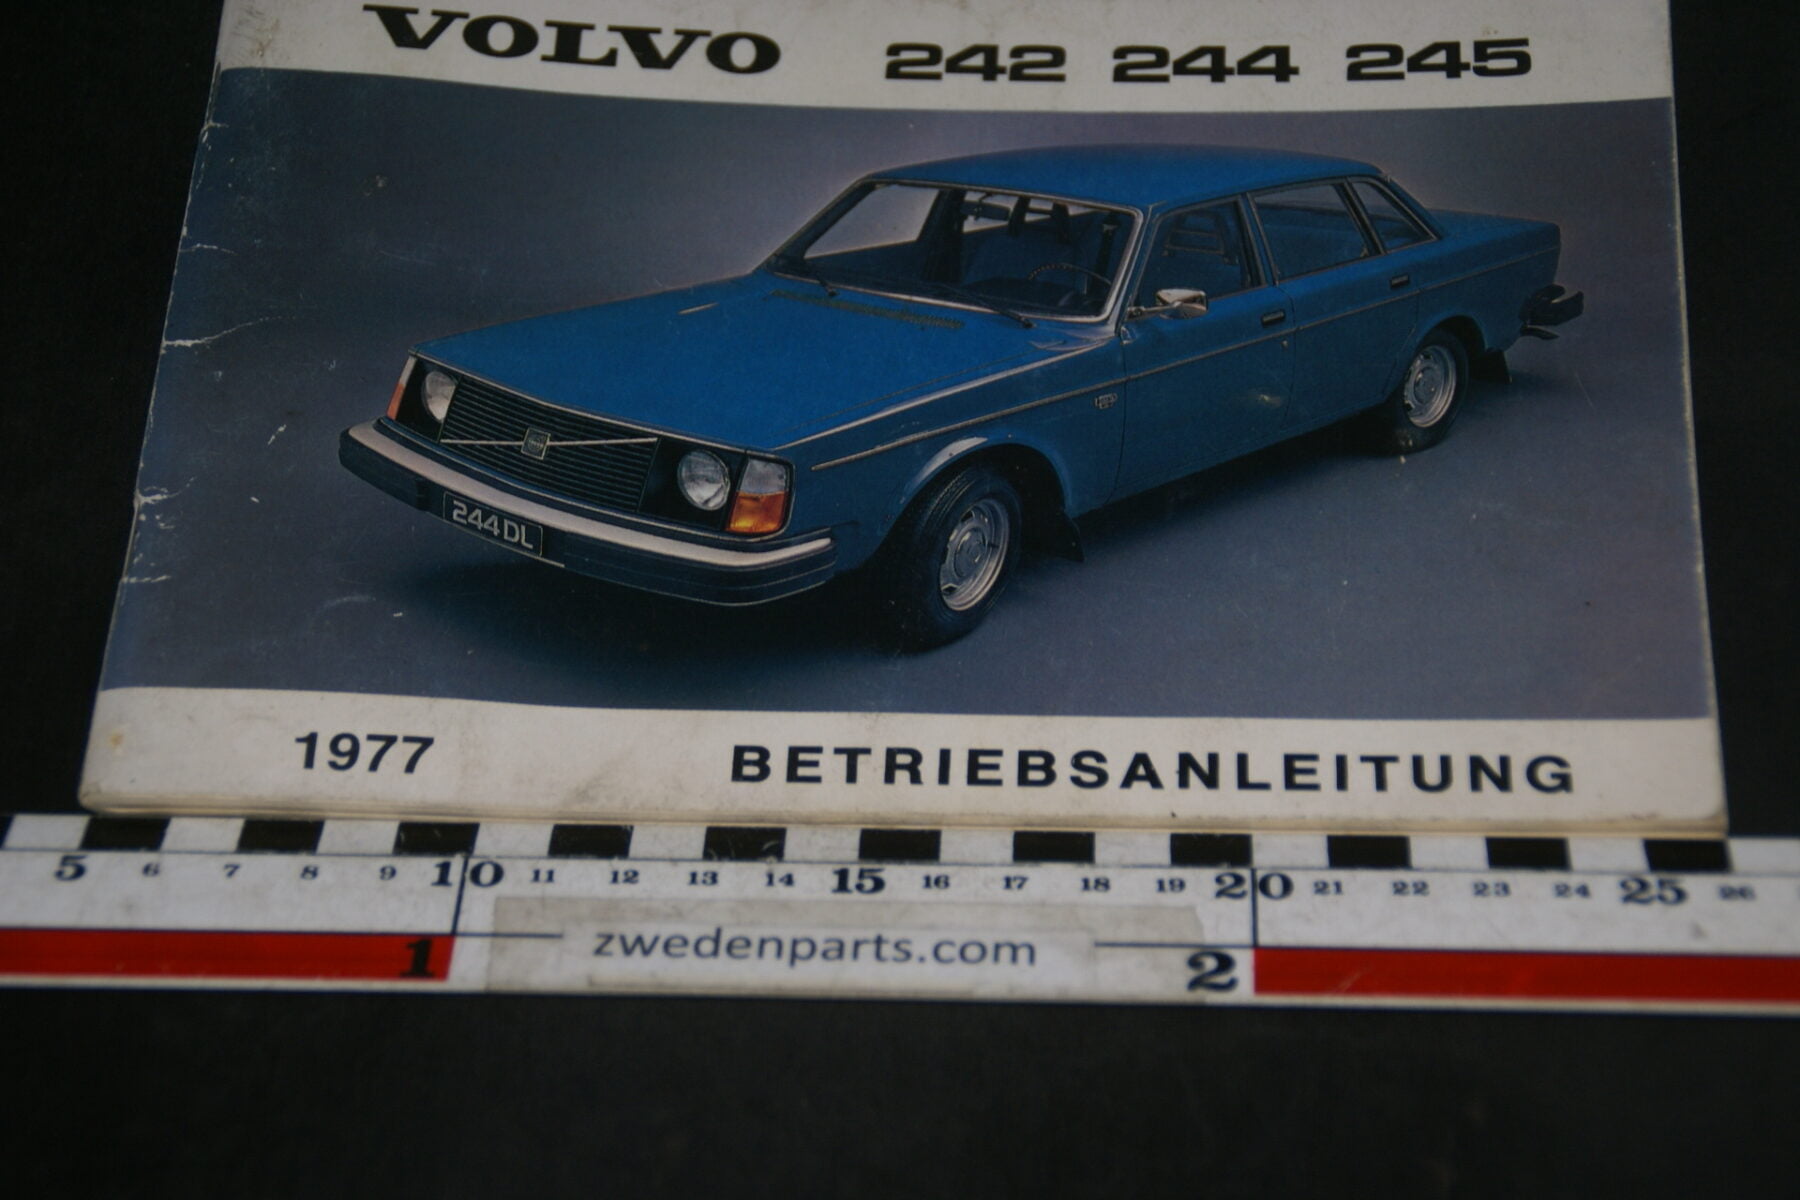 DSC07034 1976 origineel Volvo 242 244 245  Betriebsanleitung TP 1417-1 Deutsch